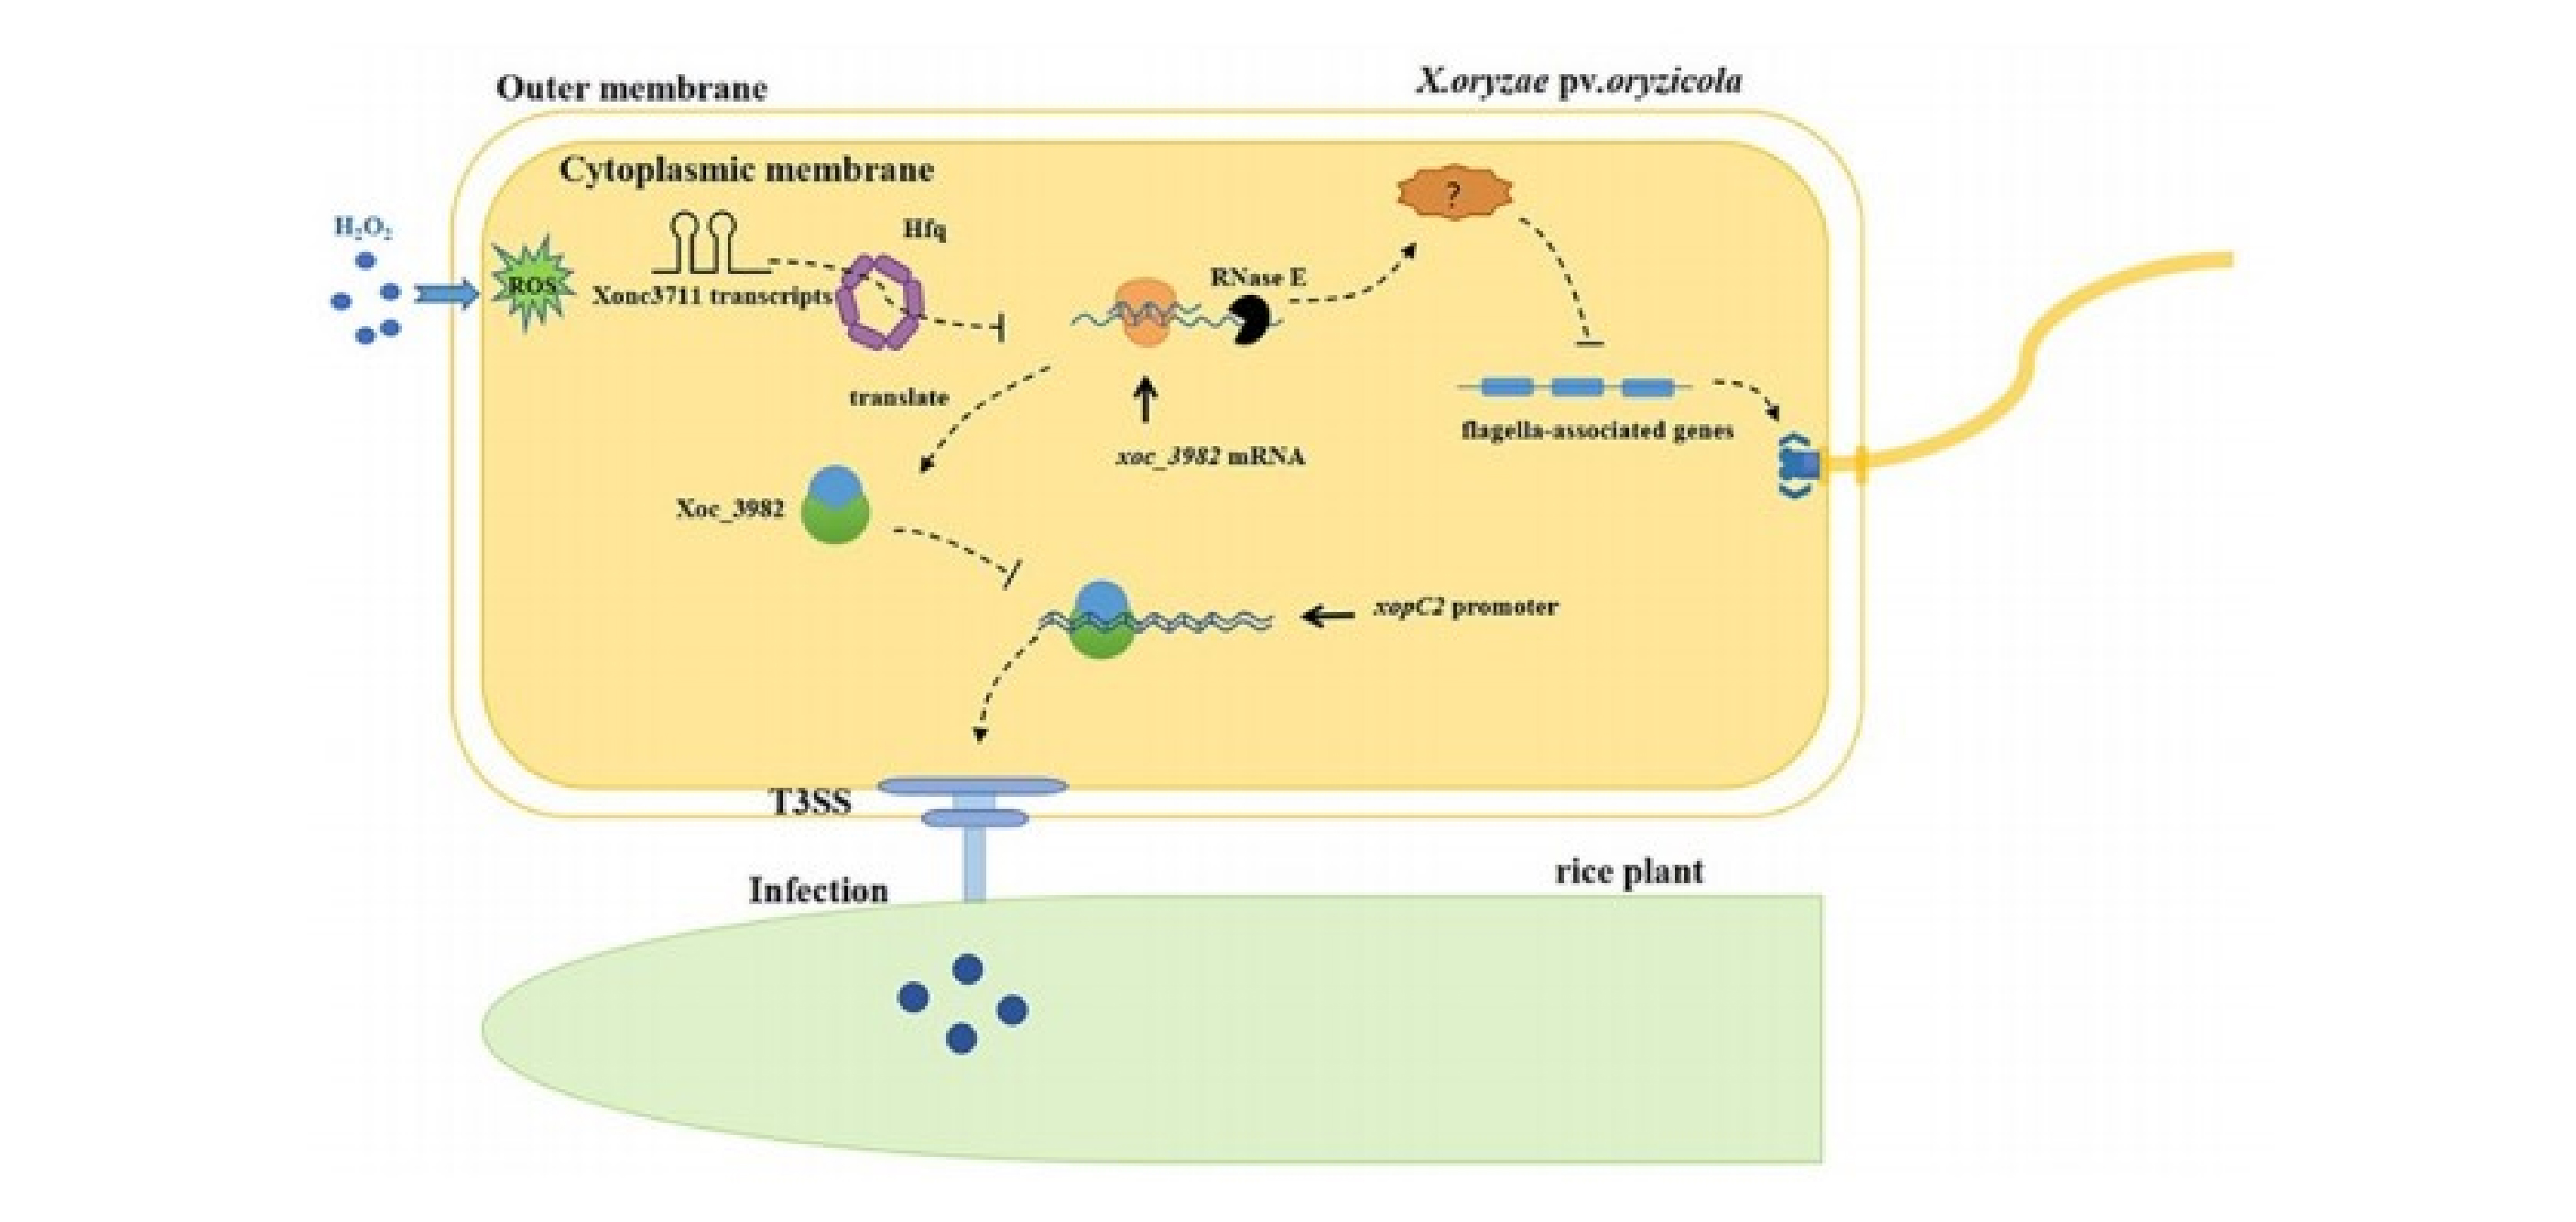 水稻细菌性条斑病菌中一个关键sRNA调节氧化应激反应及毒力